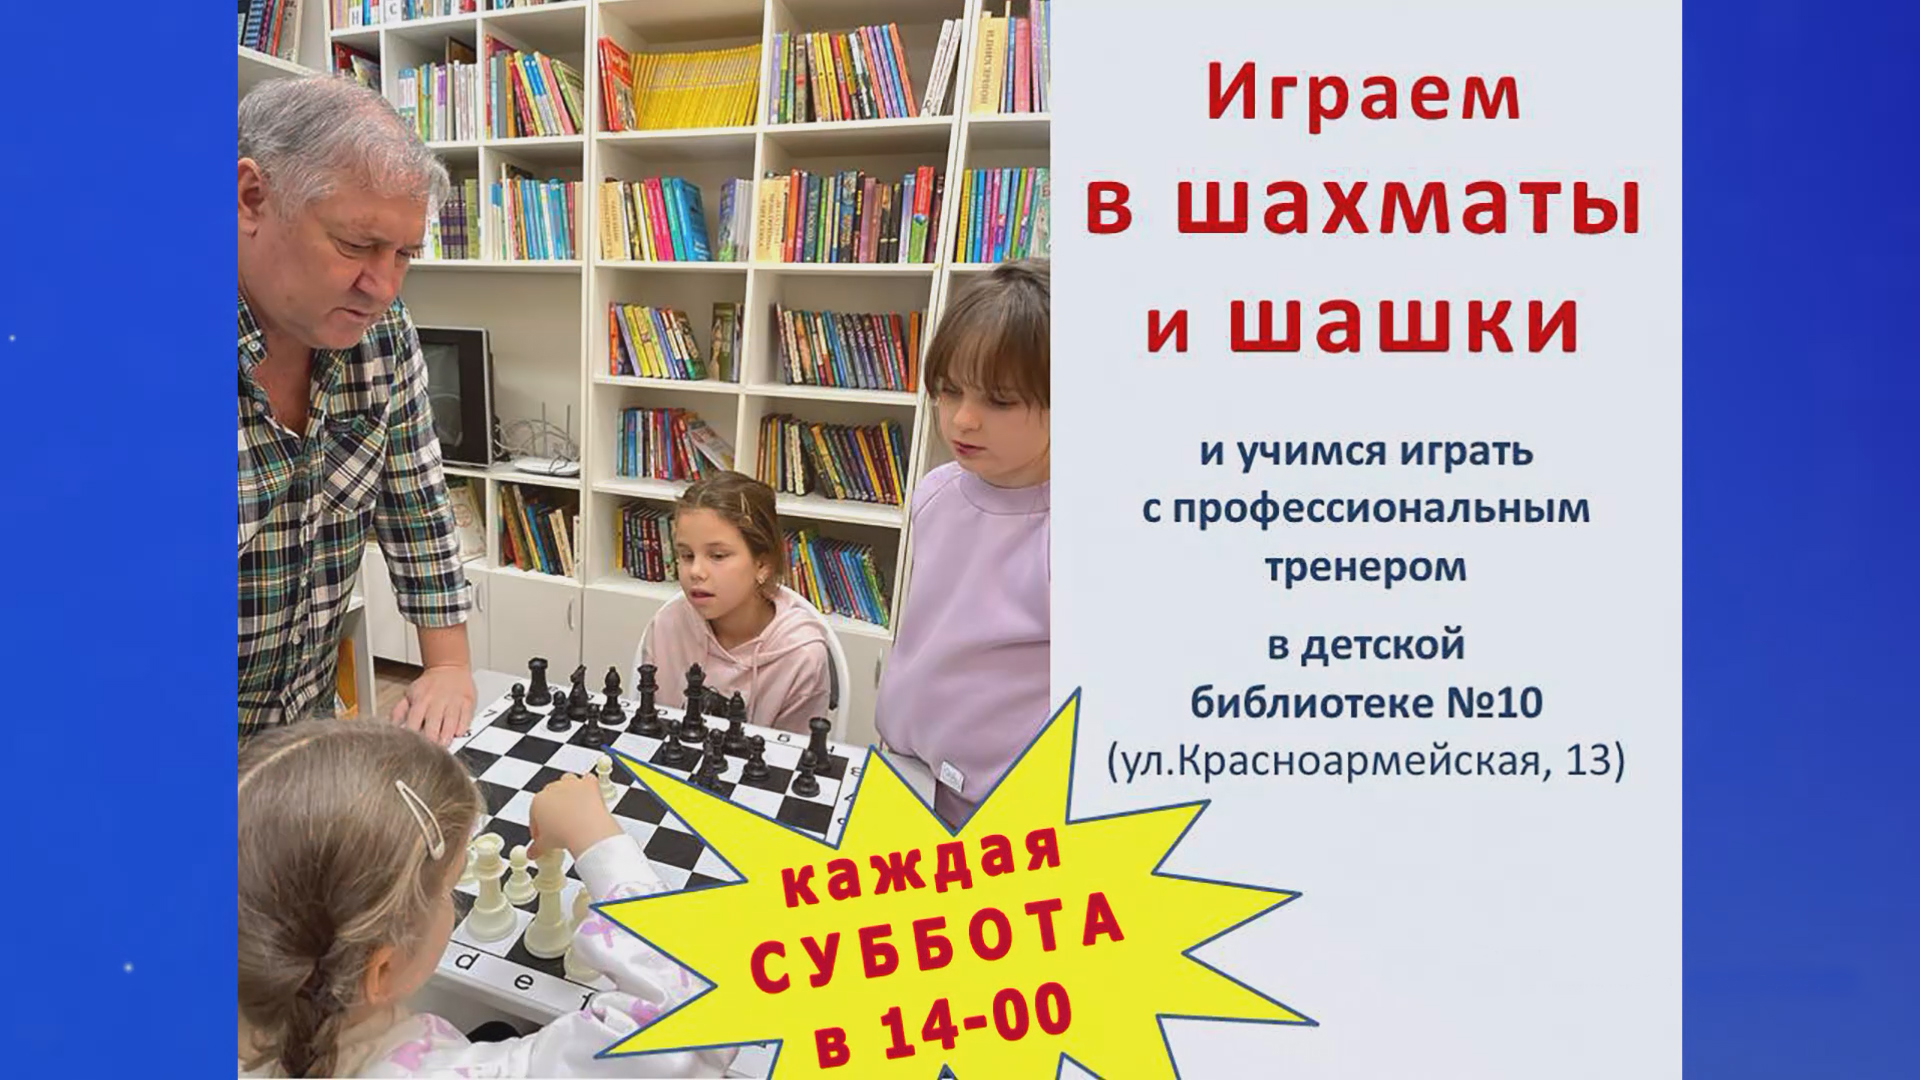 Занятия по игре в шахматы и шашки в Детской библиотеке № 10 города Сочи.